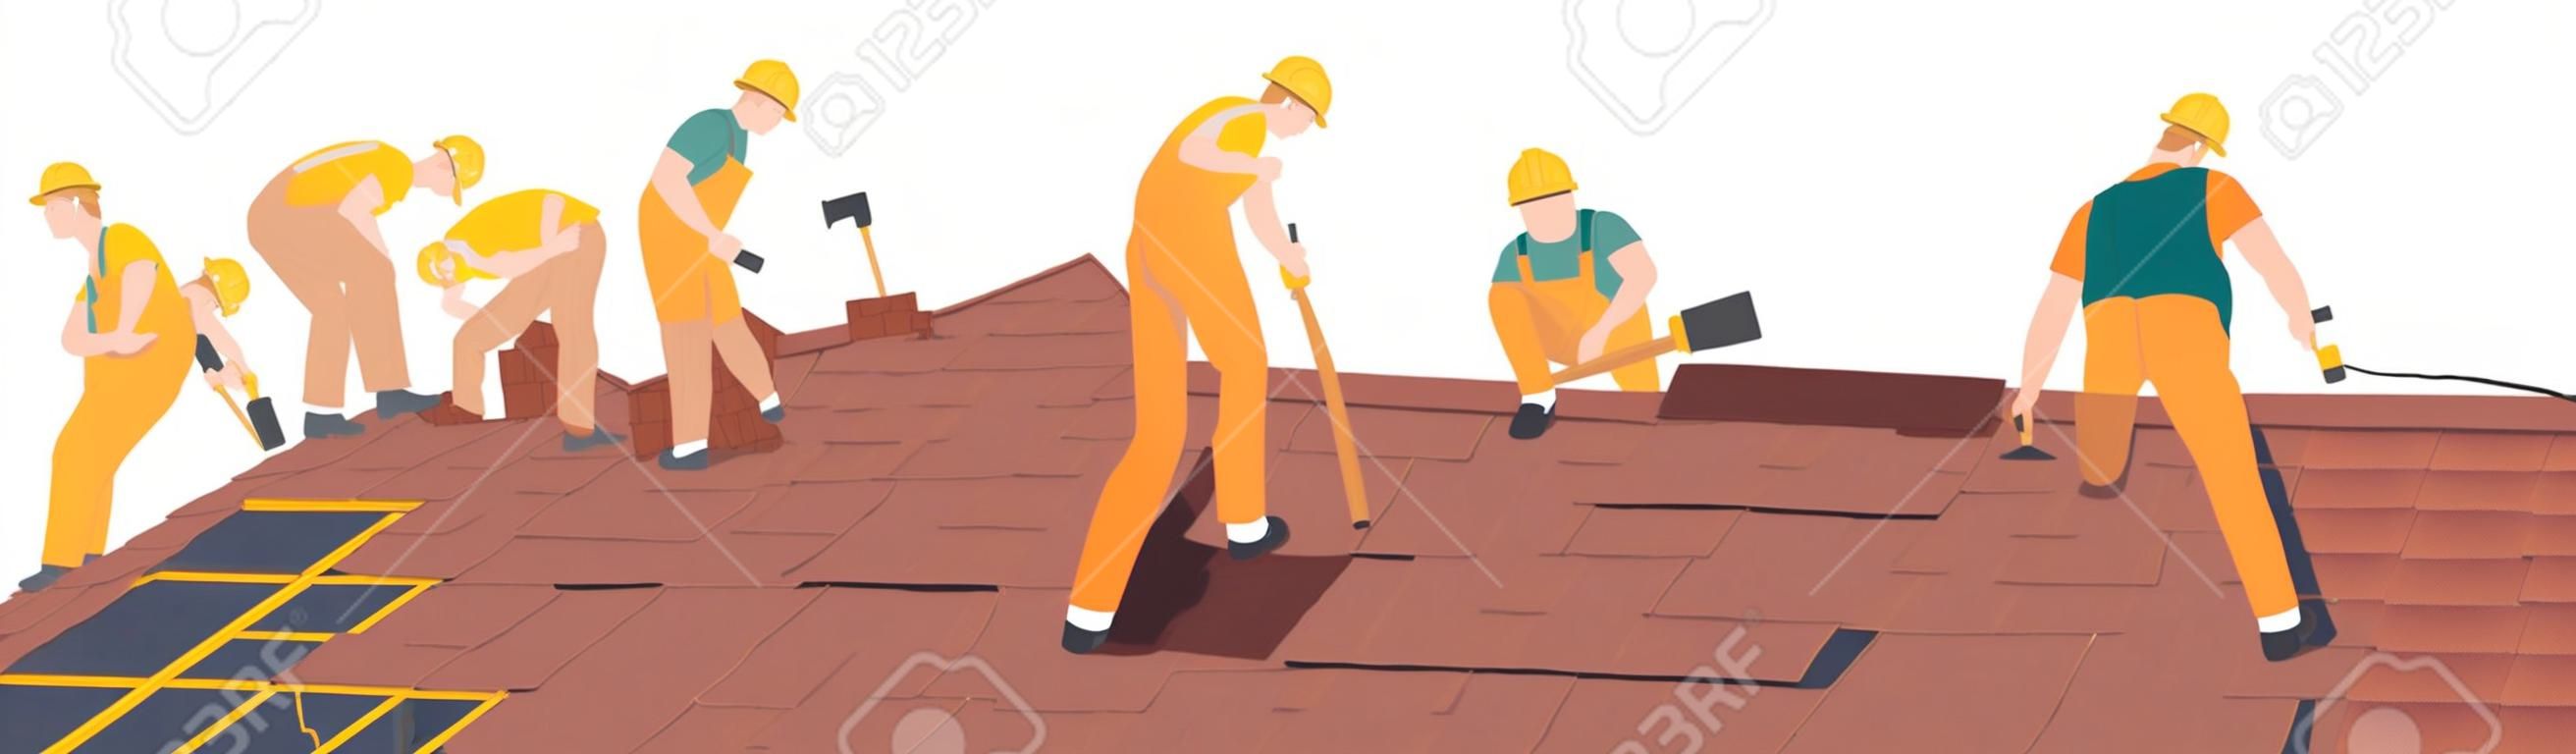 I personaggi dei lavoratori edili del tetto conducono lavori di copertura, riparazione di case, costruzione di strutture, fissaggio di case di tegole sul tetto